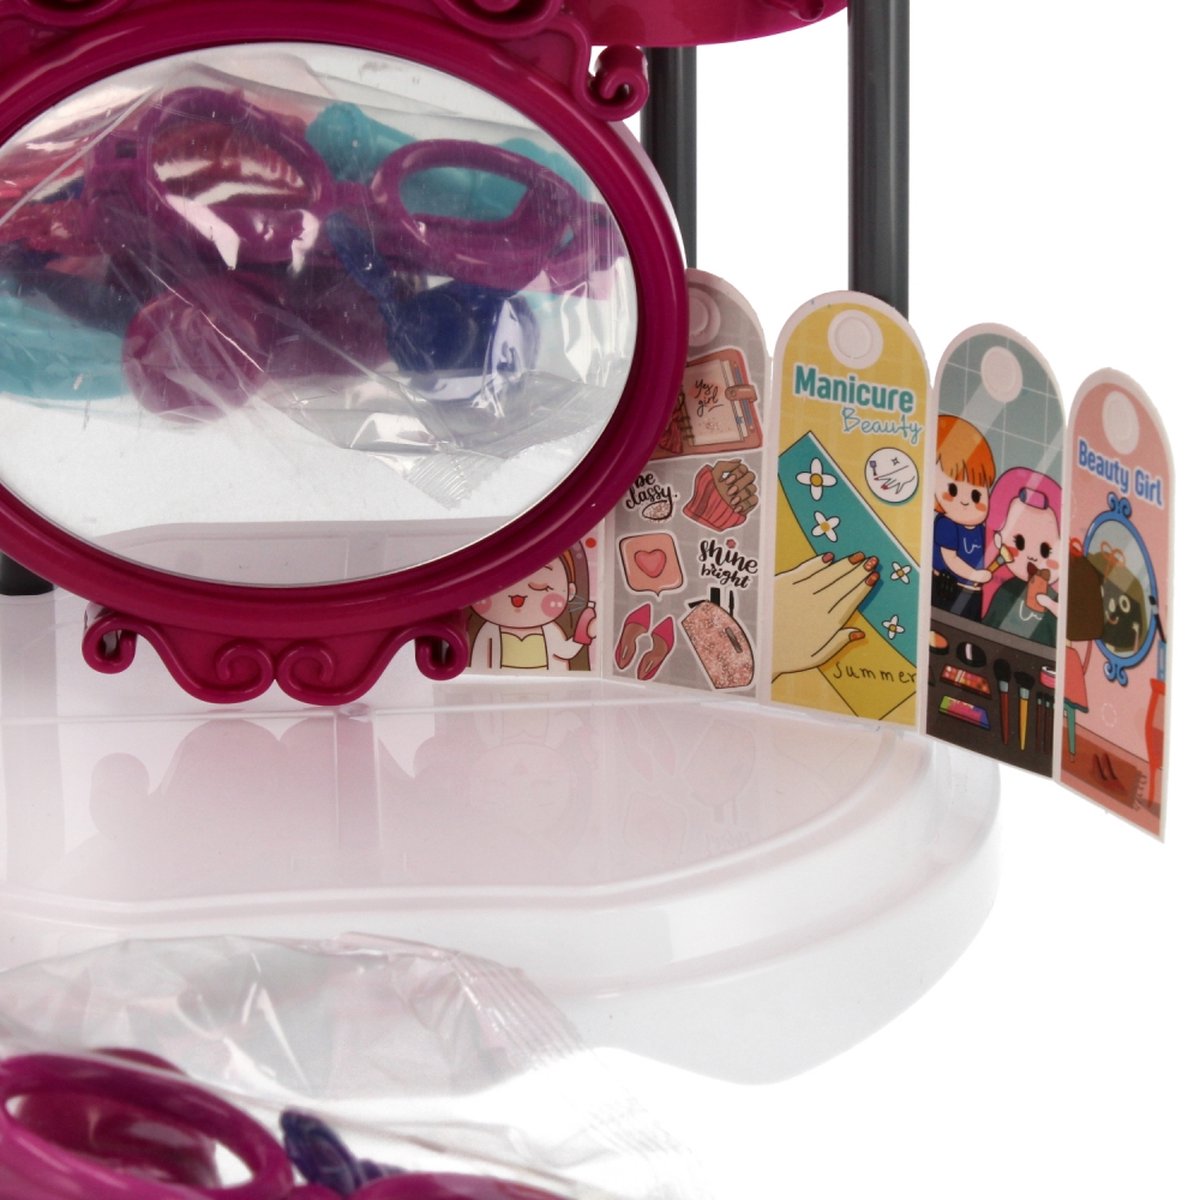 <tc>Ariko</tc>  Spielzeugkoffer Kosmetiksalon 30 Teile - Fön, Spiegel, Schminke, Parfüm und vieles mehr - praktischer Koffer zum Mitnehmen